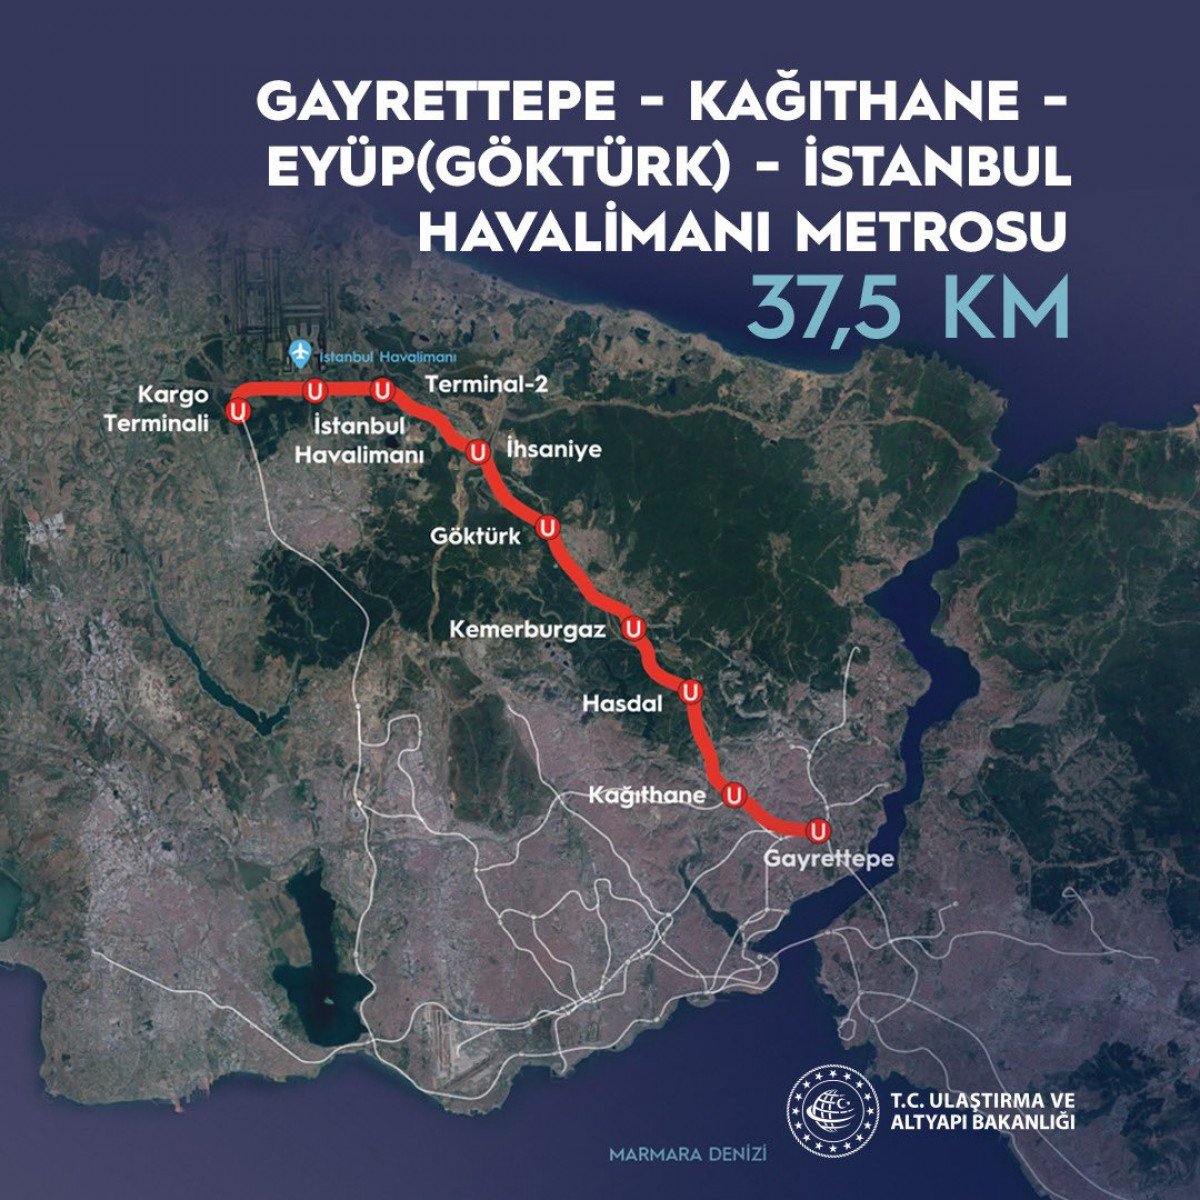 Gayrettepe - İstanbul Havalimanı metro hattında test sürüşleri başladı #5